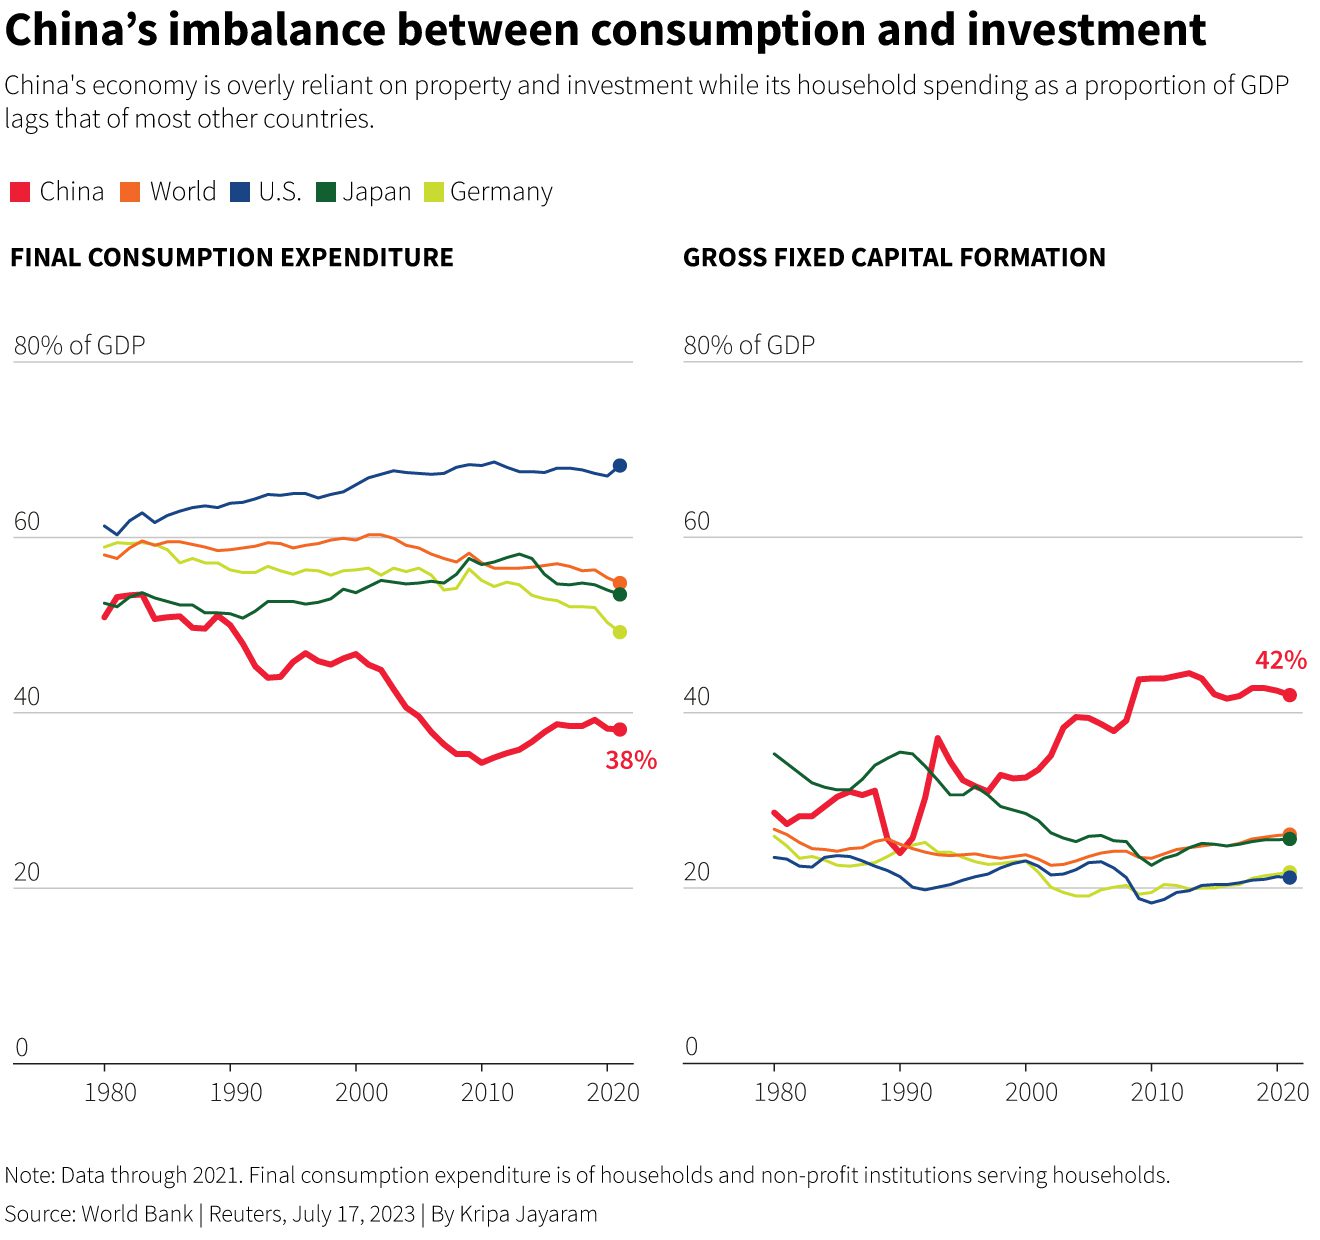 China's gezinsuitgaven als percentage van het bbp blijven achter bij die van de meeste andere landen.